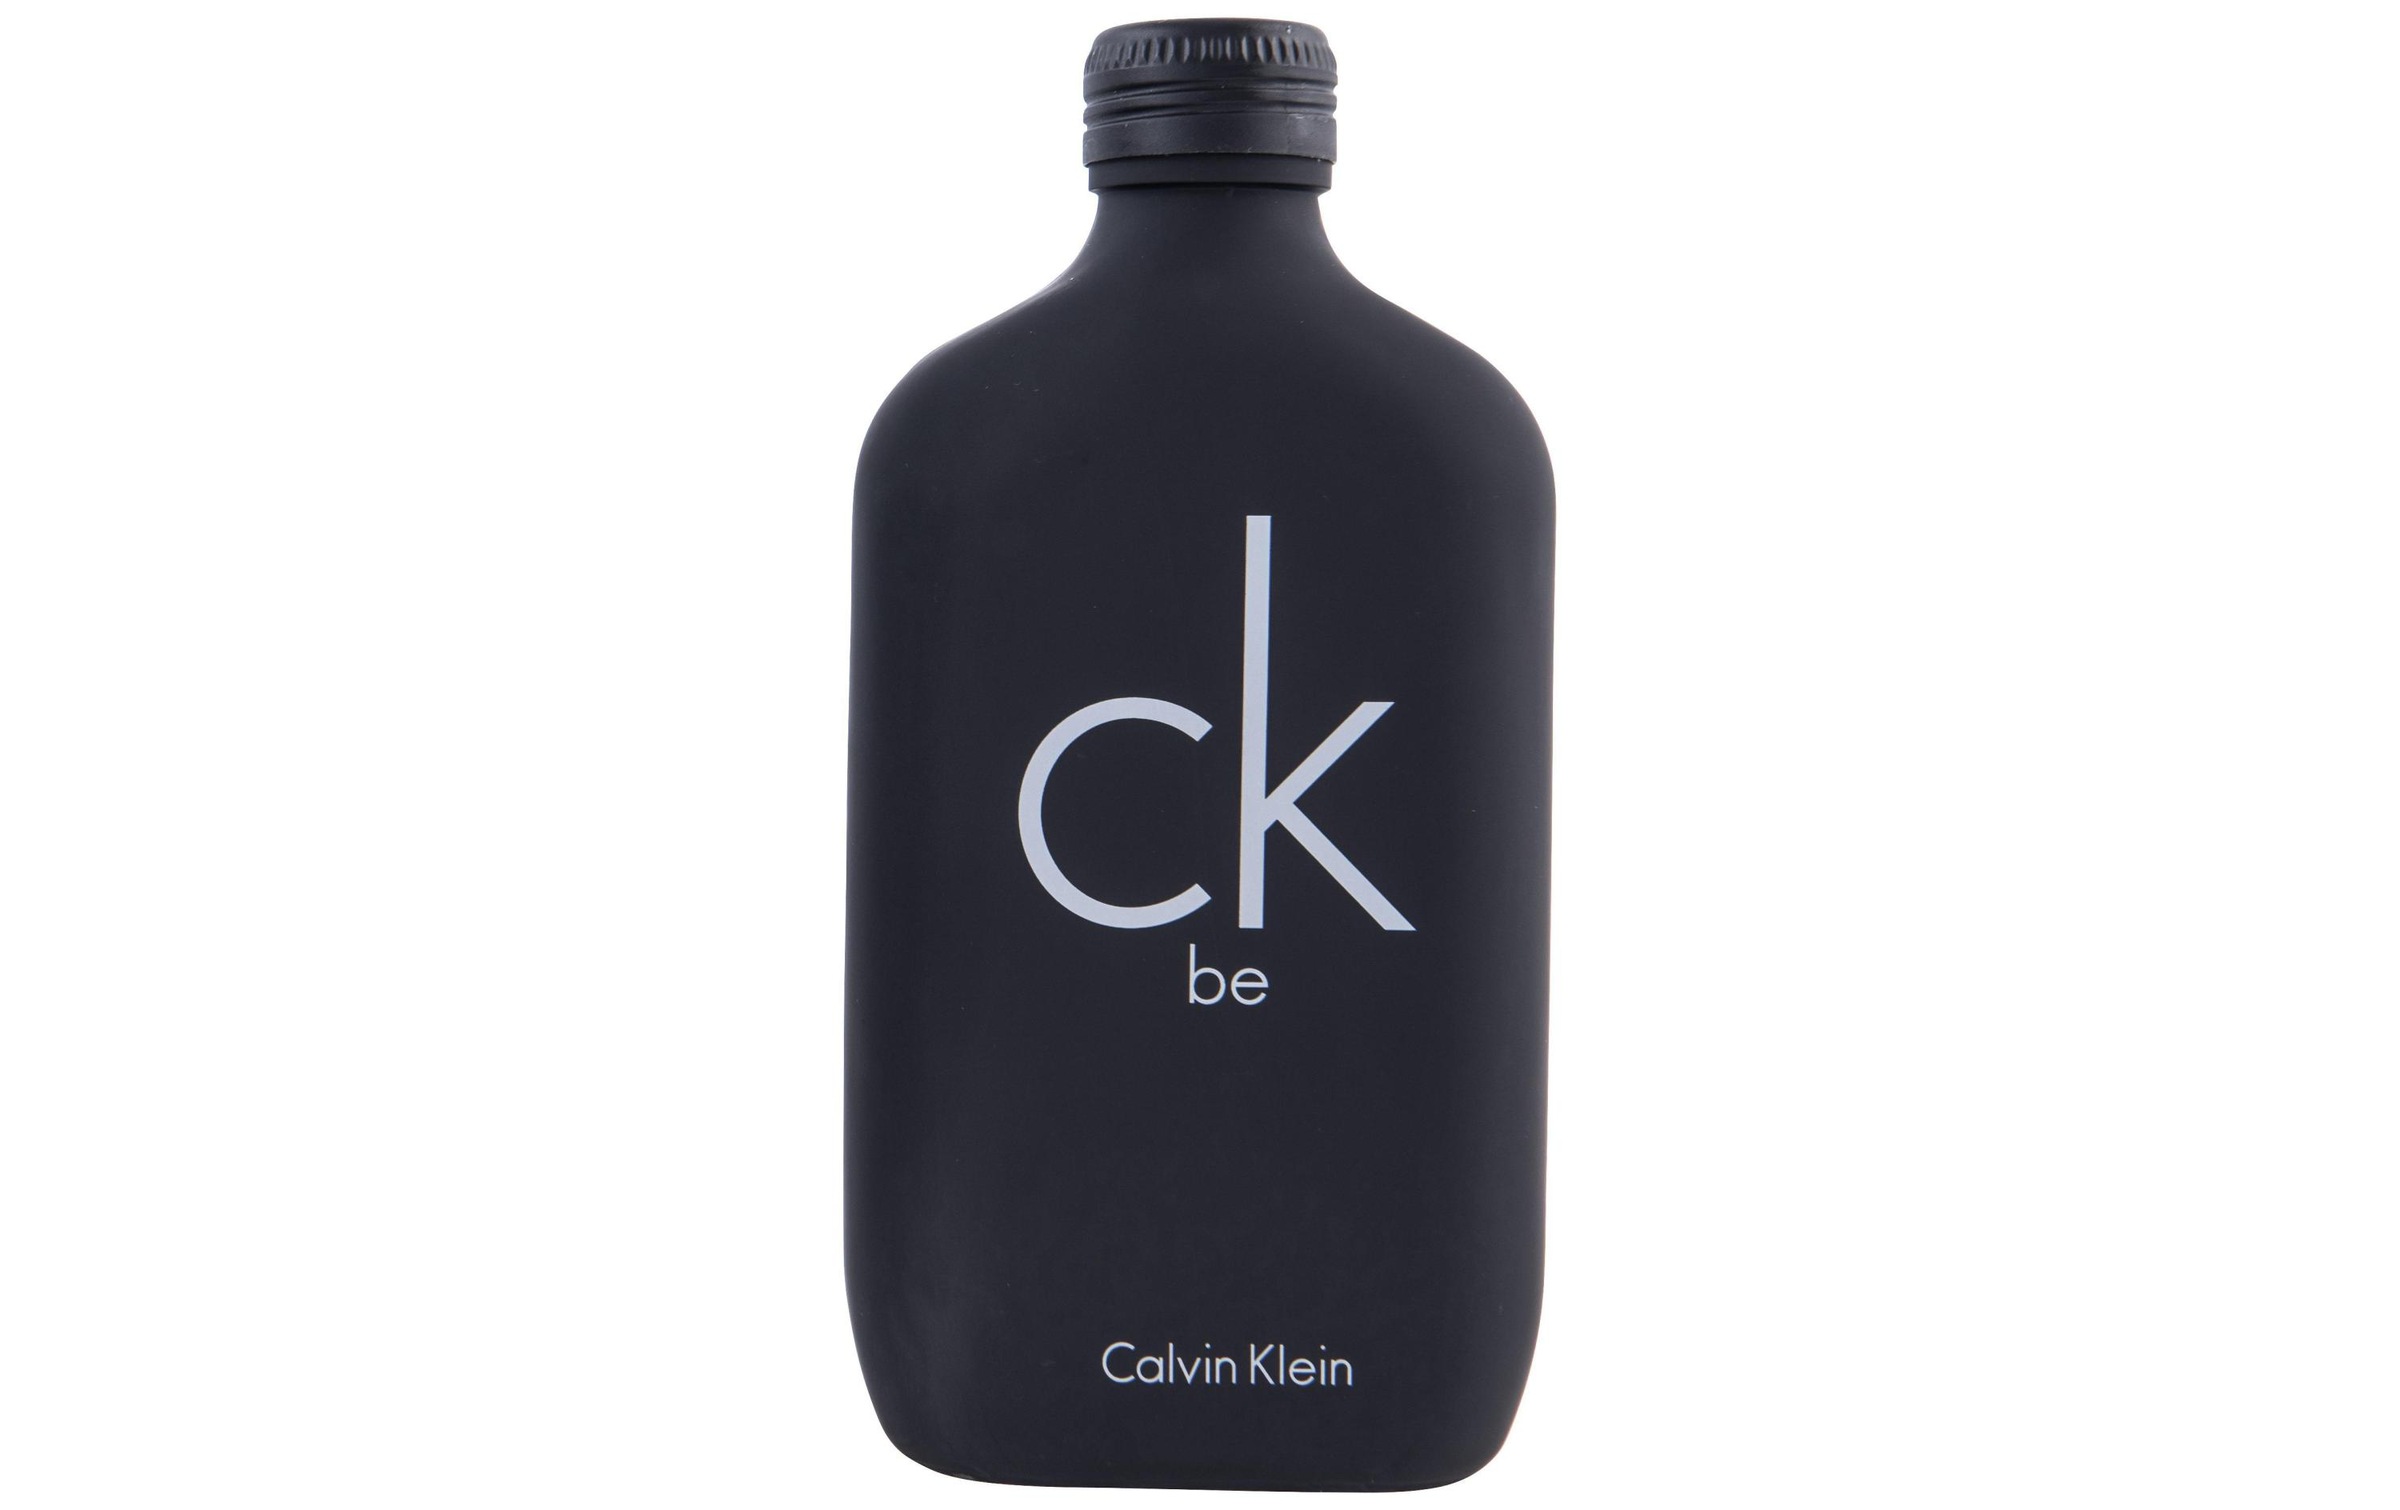 Calvin Klein Eau de Toilette »CK be 200 ml«